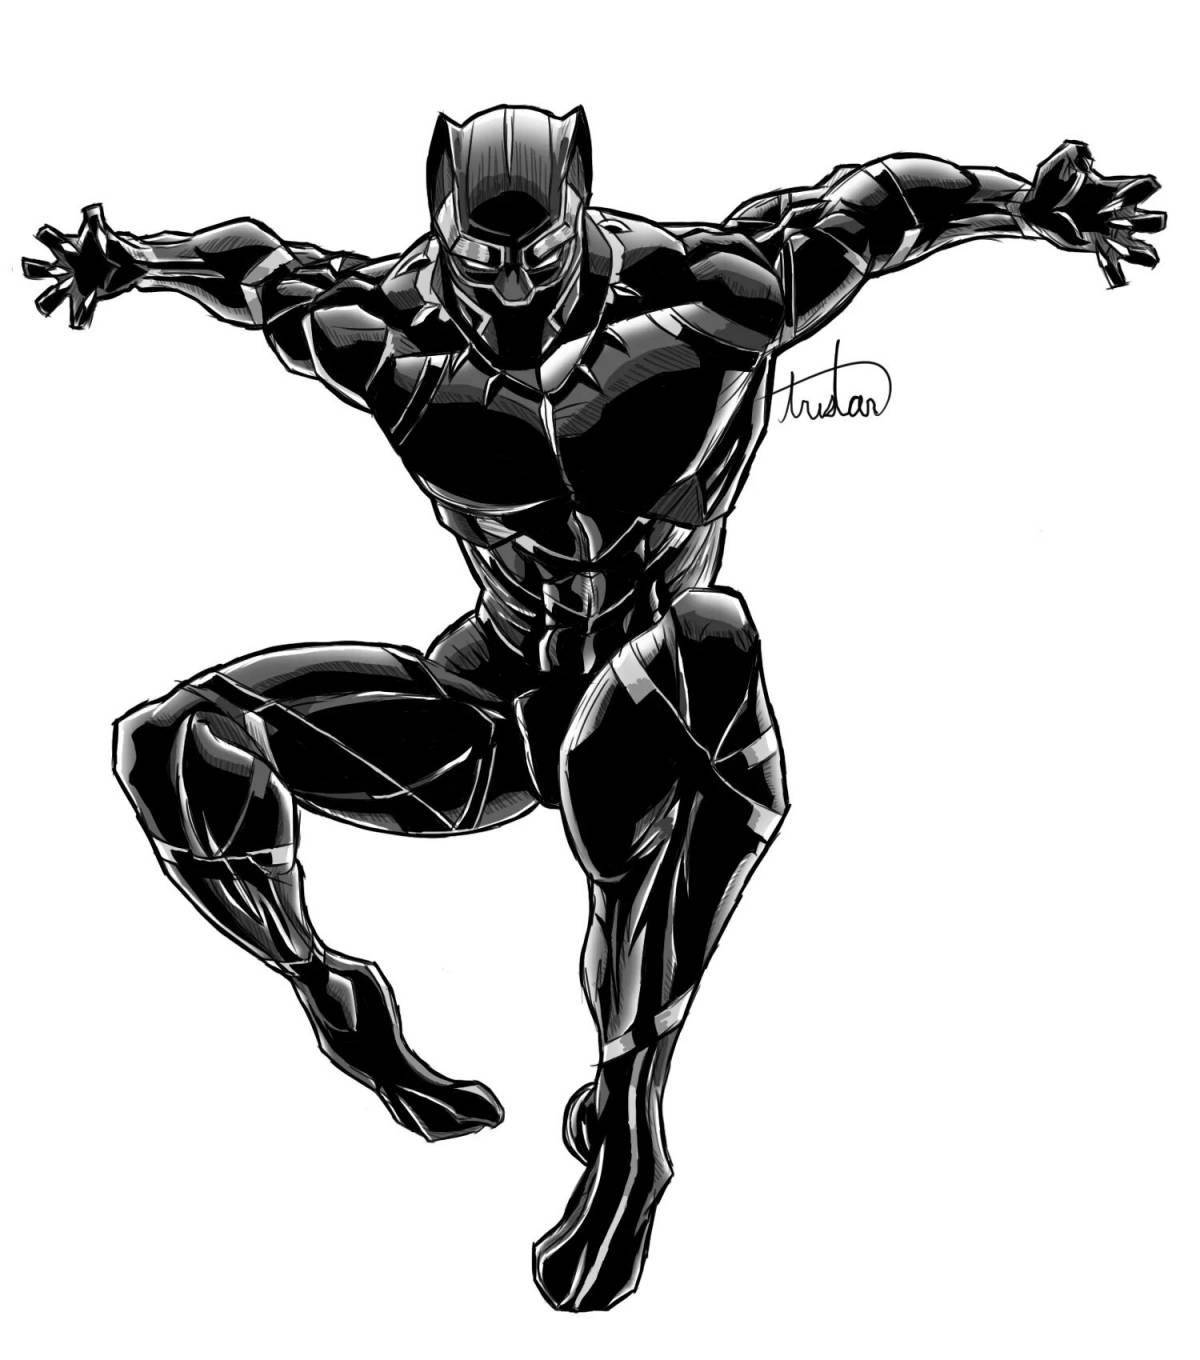 Marvel Black Panther #1